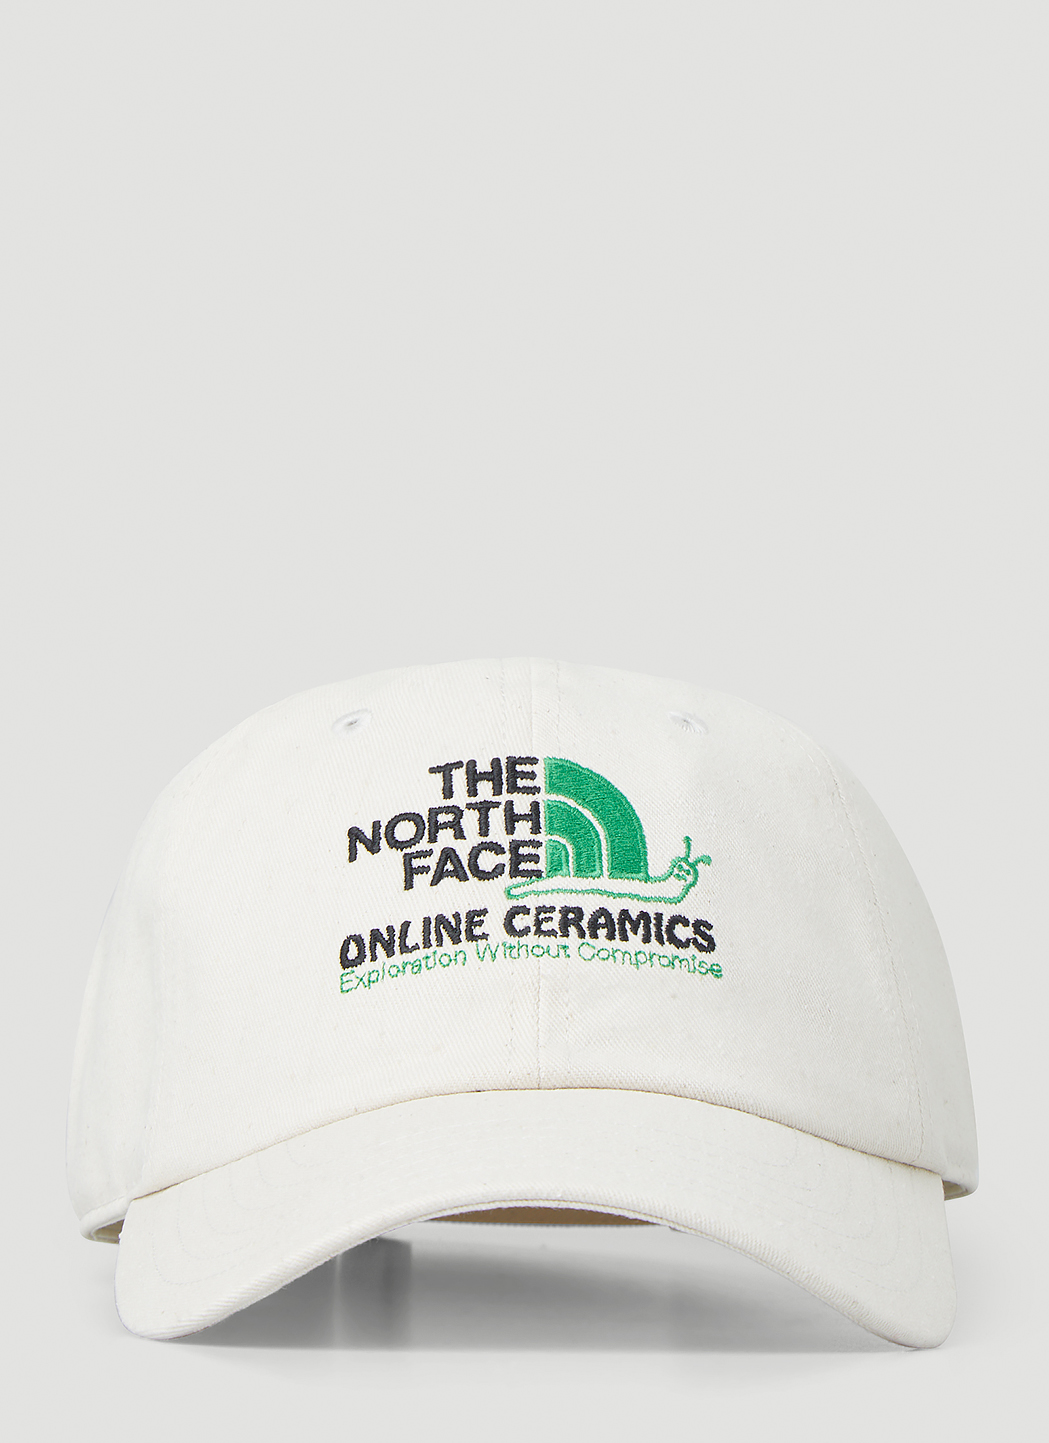 The North Face x Online Ceramics Baseball Cap | LN-CC